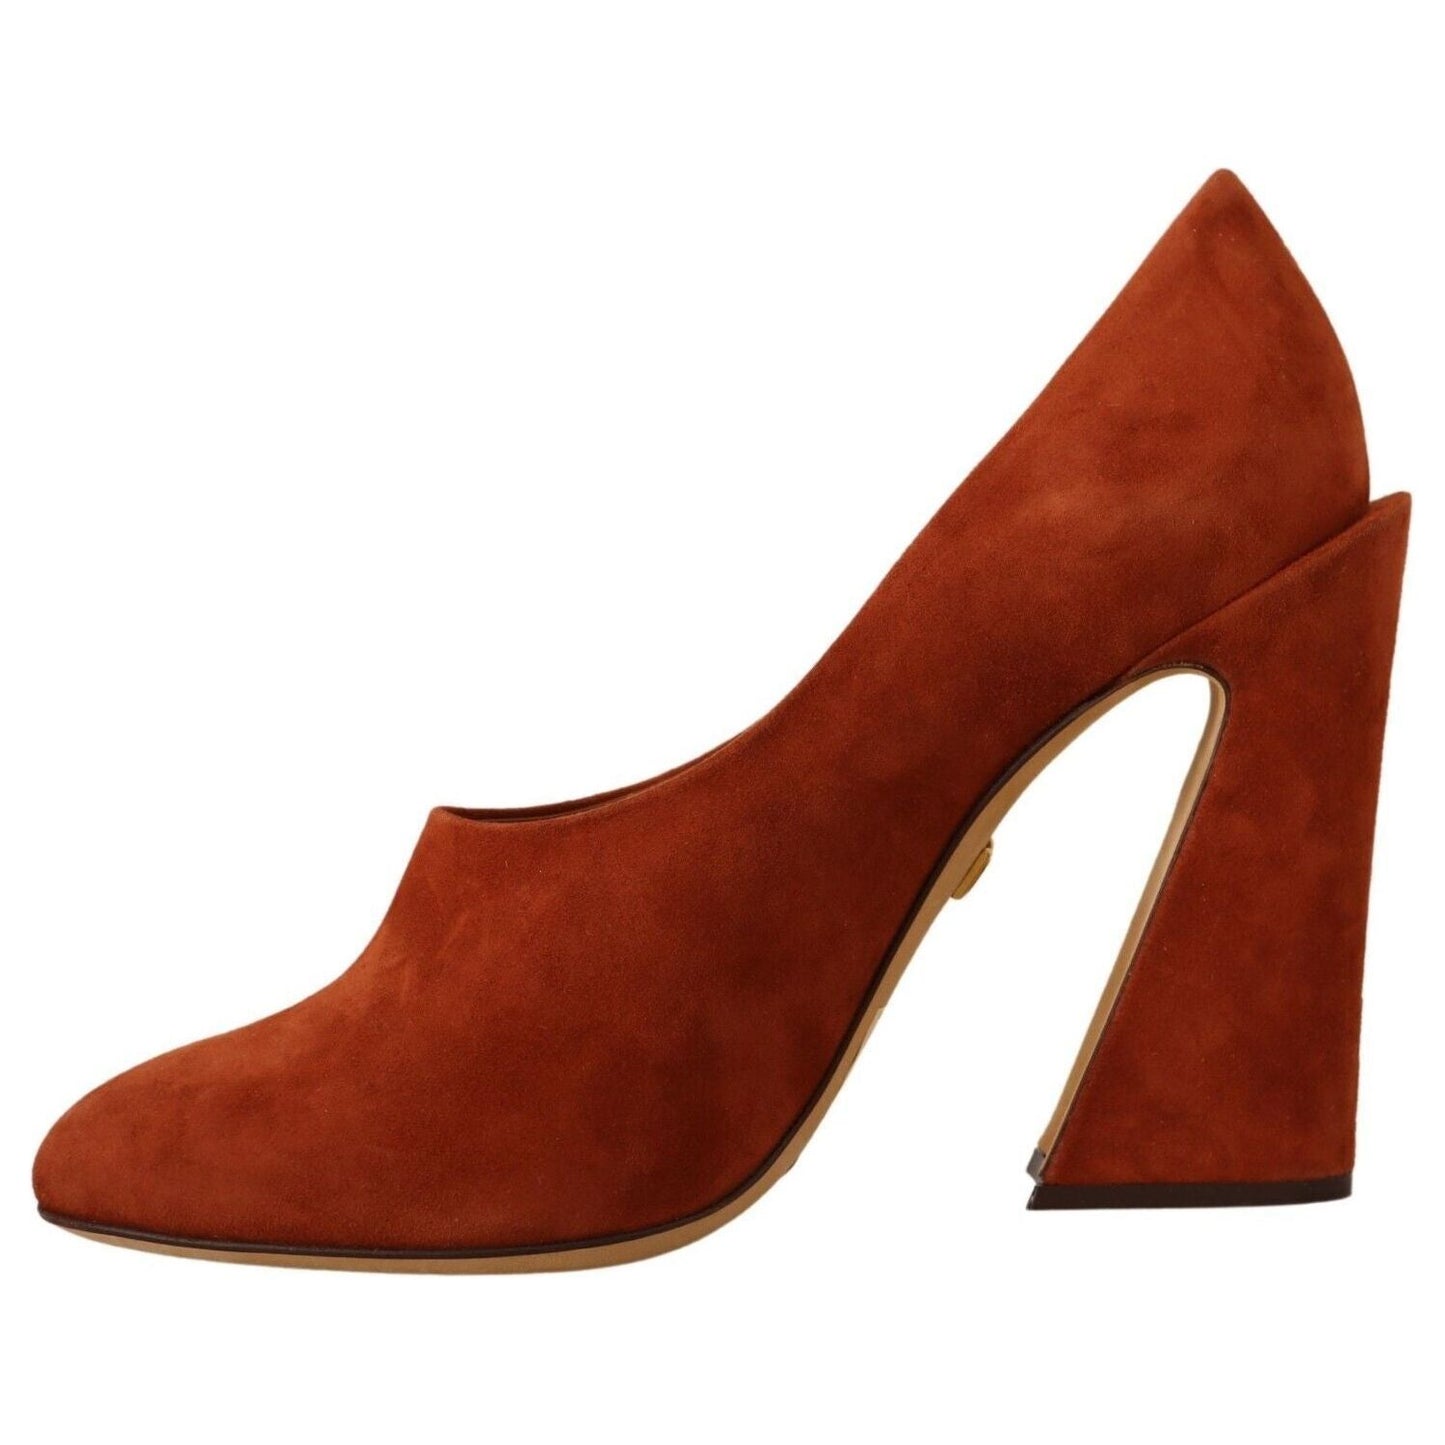 Dolce & Gabbana Elegant Cognac Suede Pumps brown-suede-leather-block-heels-pumps-shoes s-l1600-4-52-20fad9eb-db4.jpg